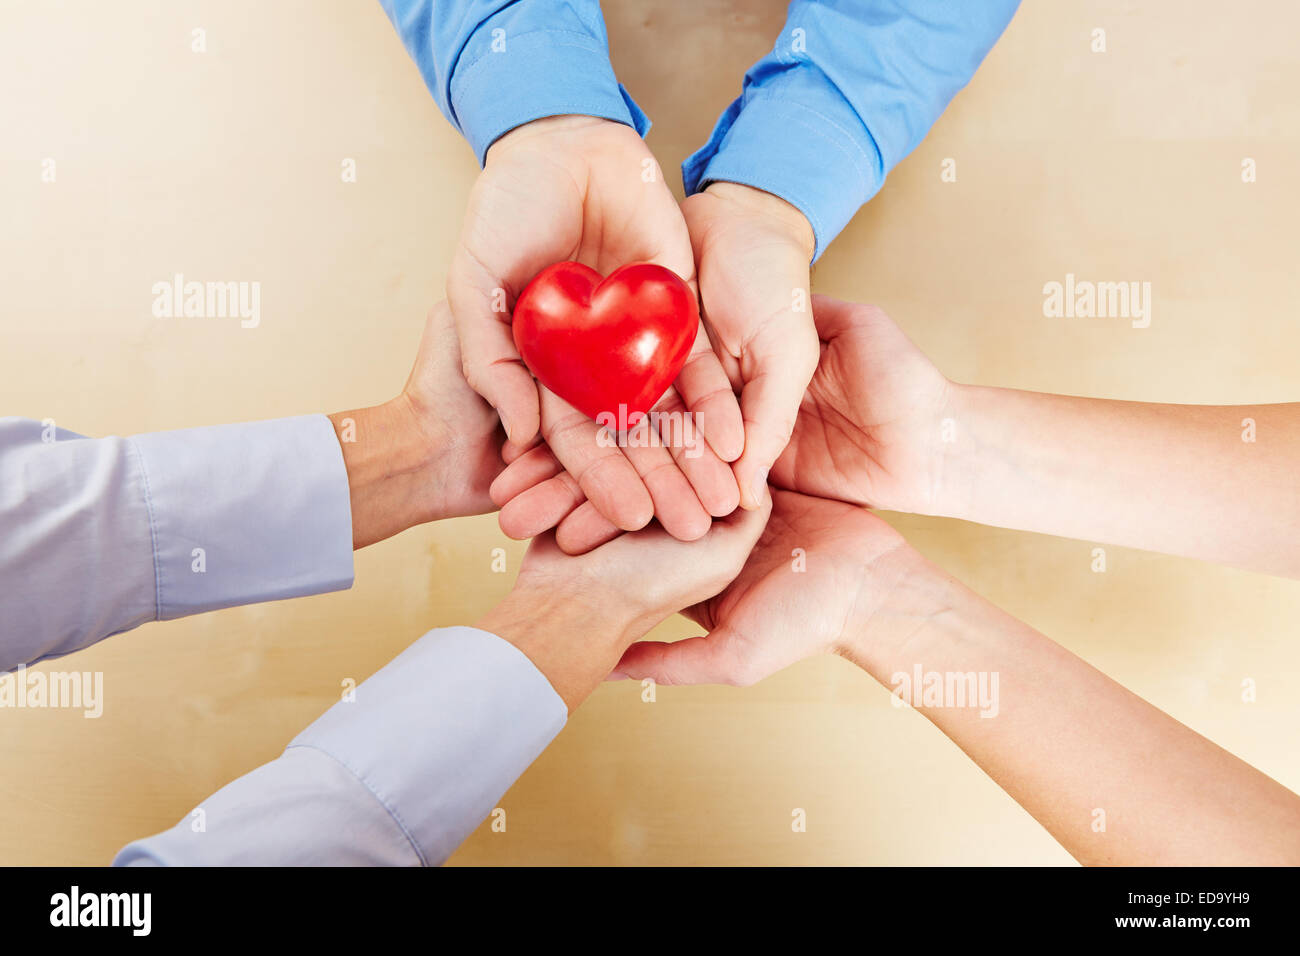 Viele Hände halten zusammen ein kleines rotes Herz Stockfoto